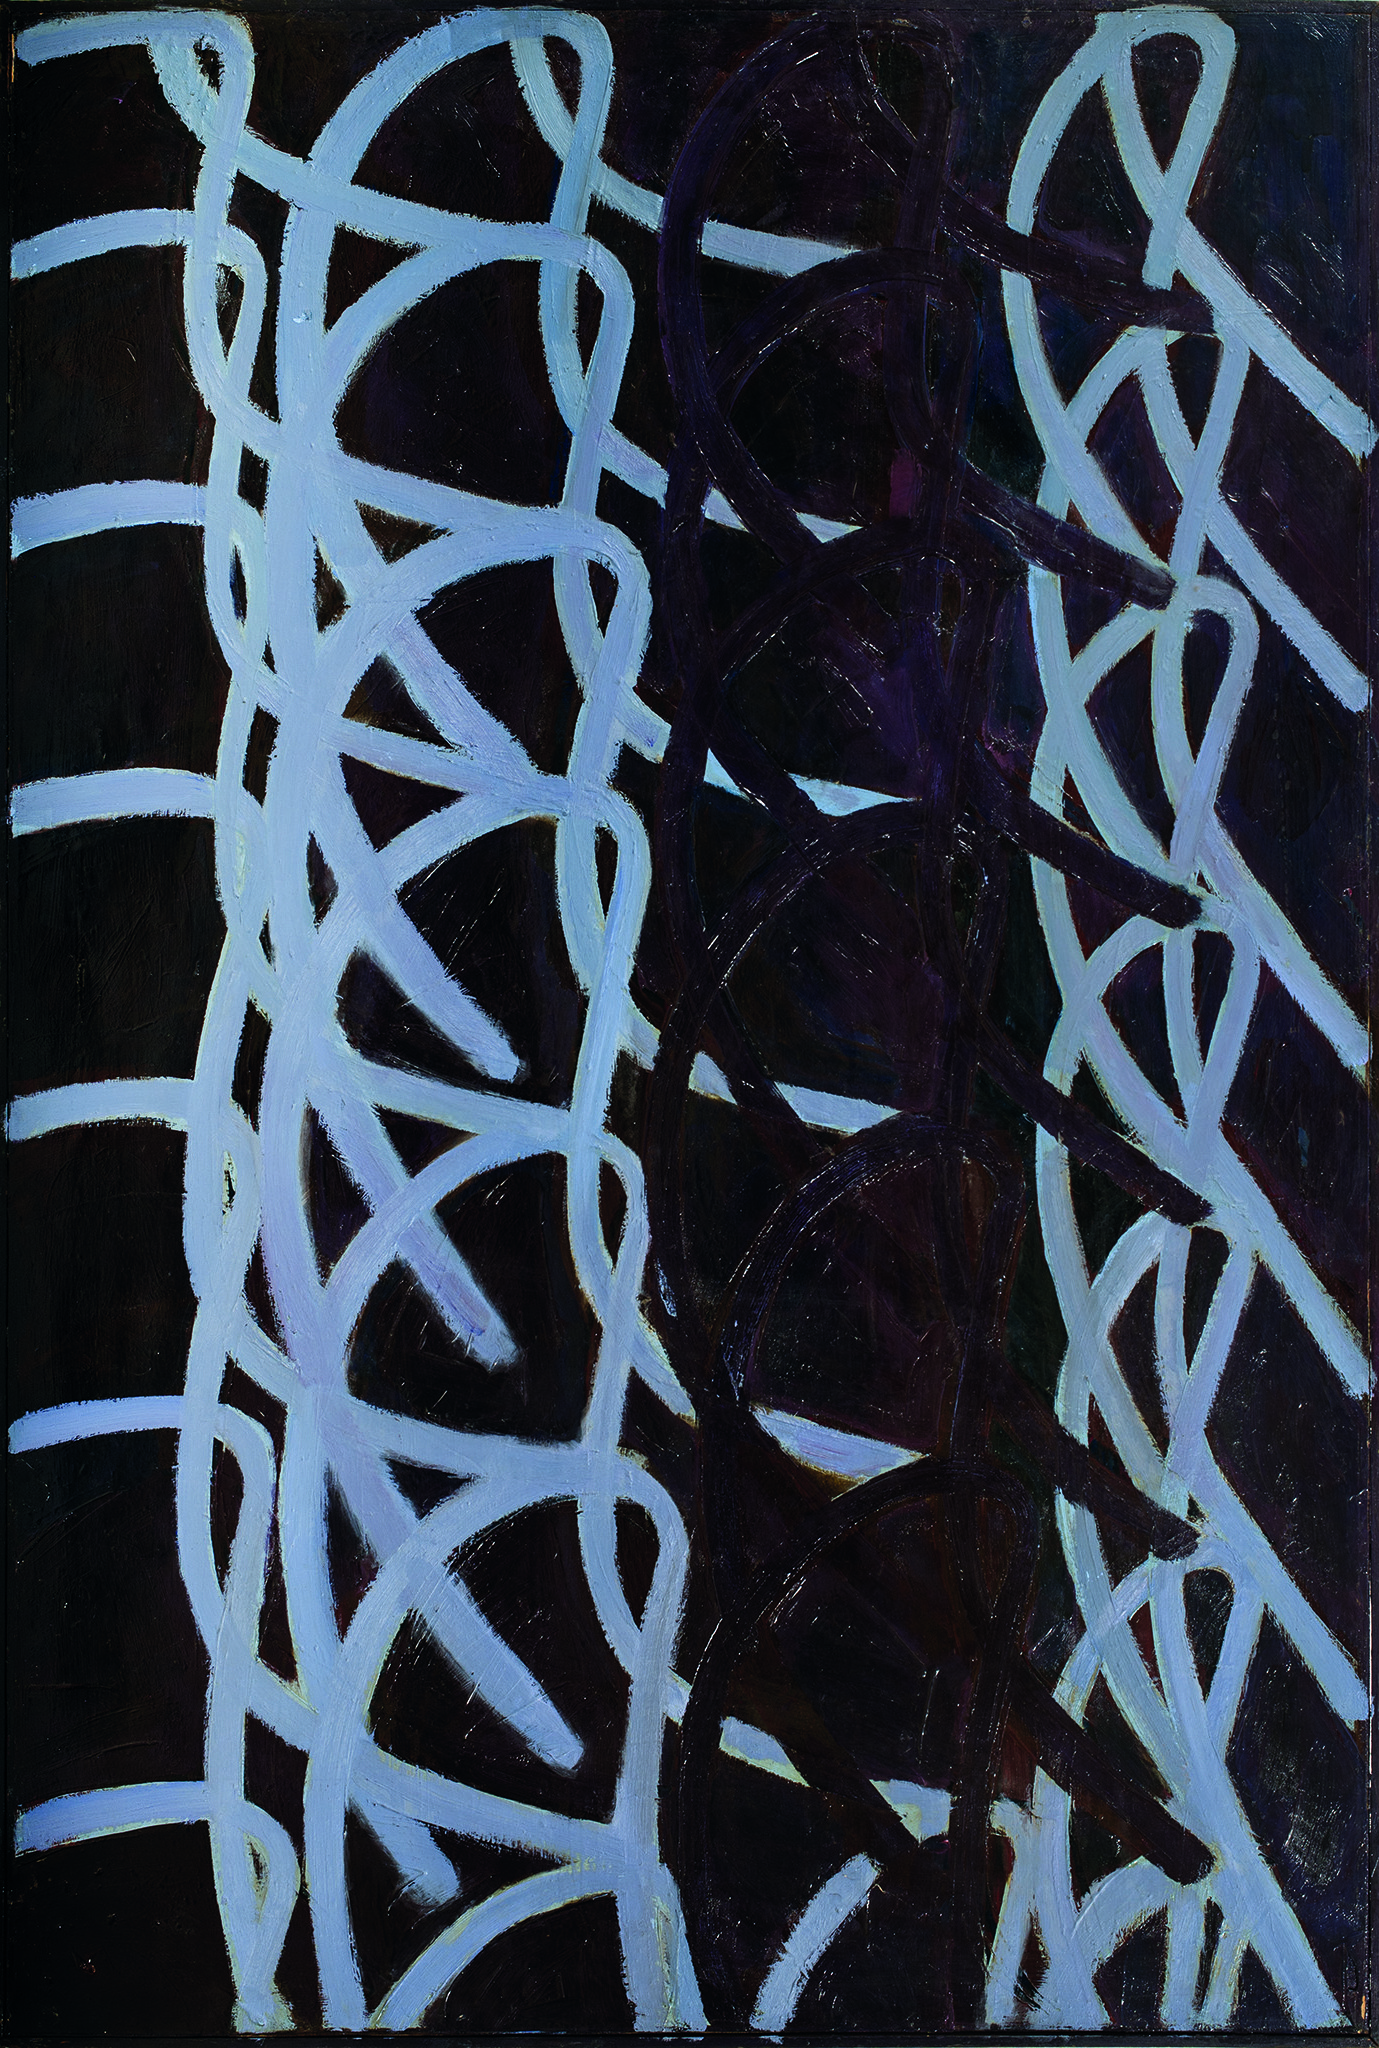 ▷ Ceibo blanco por Américo Spósito, 1982 | Pintura | Artsper (1319292)